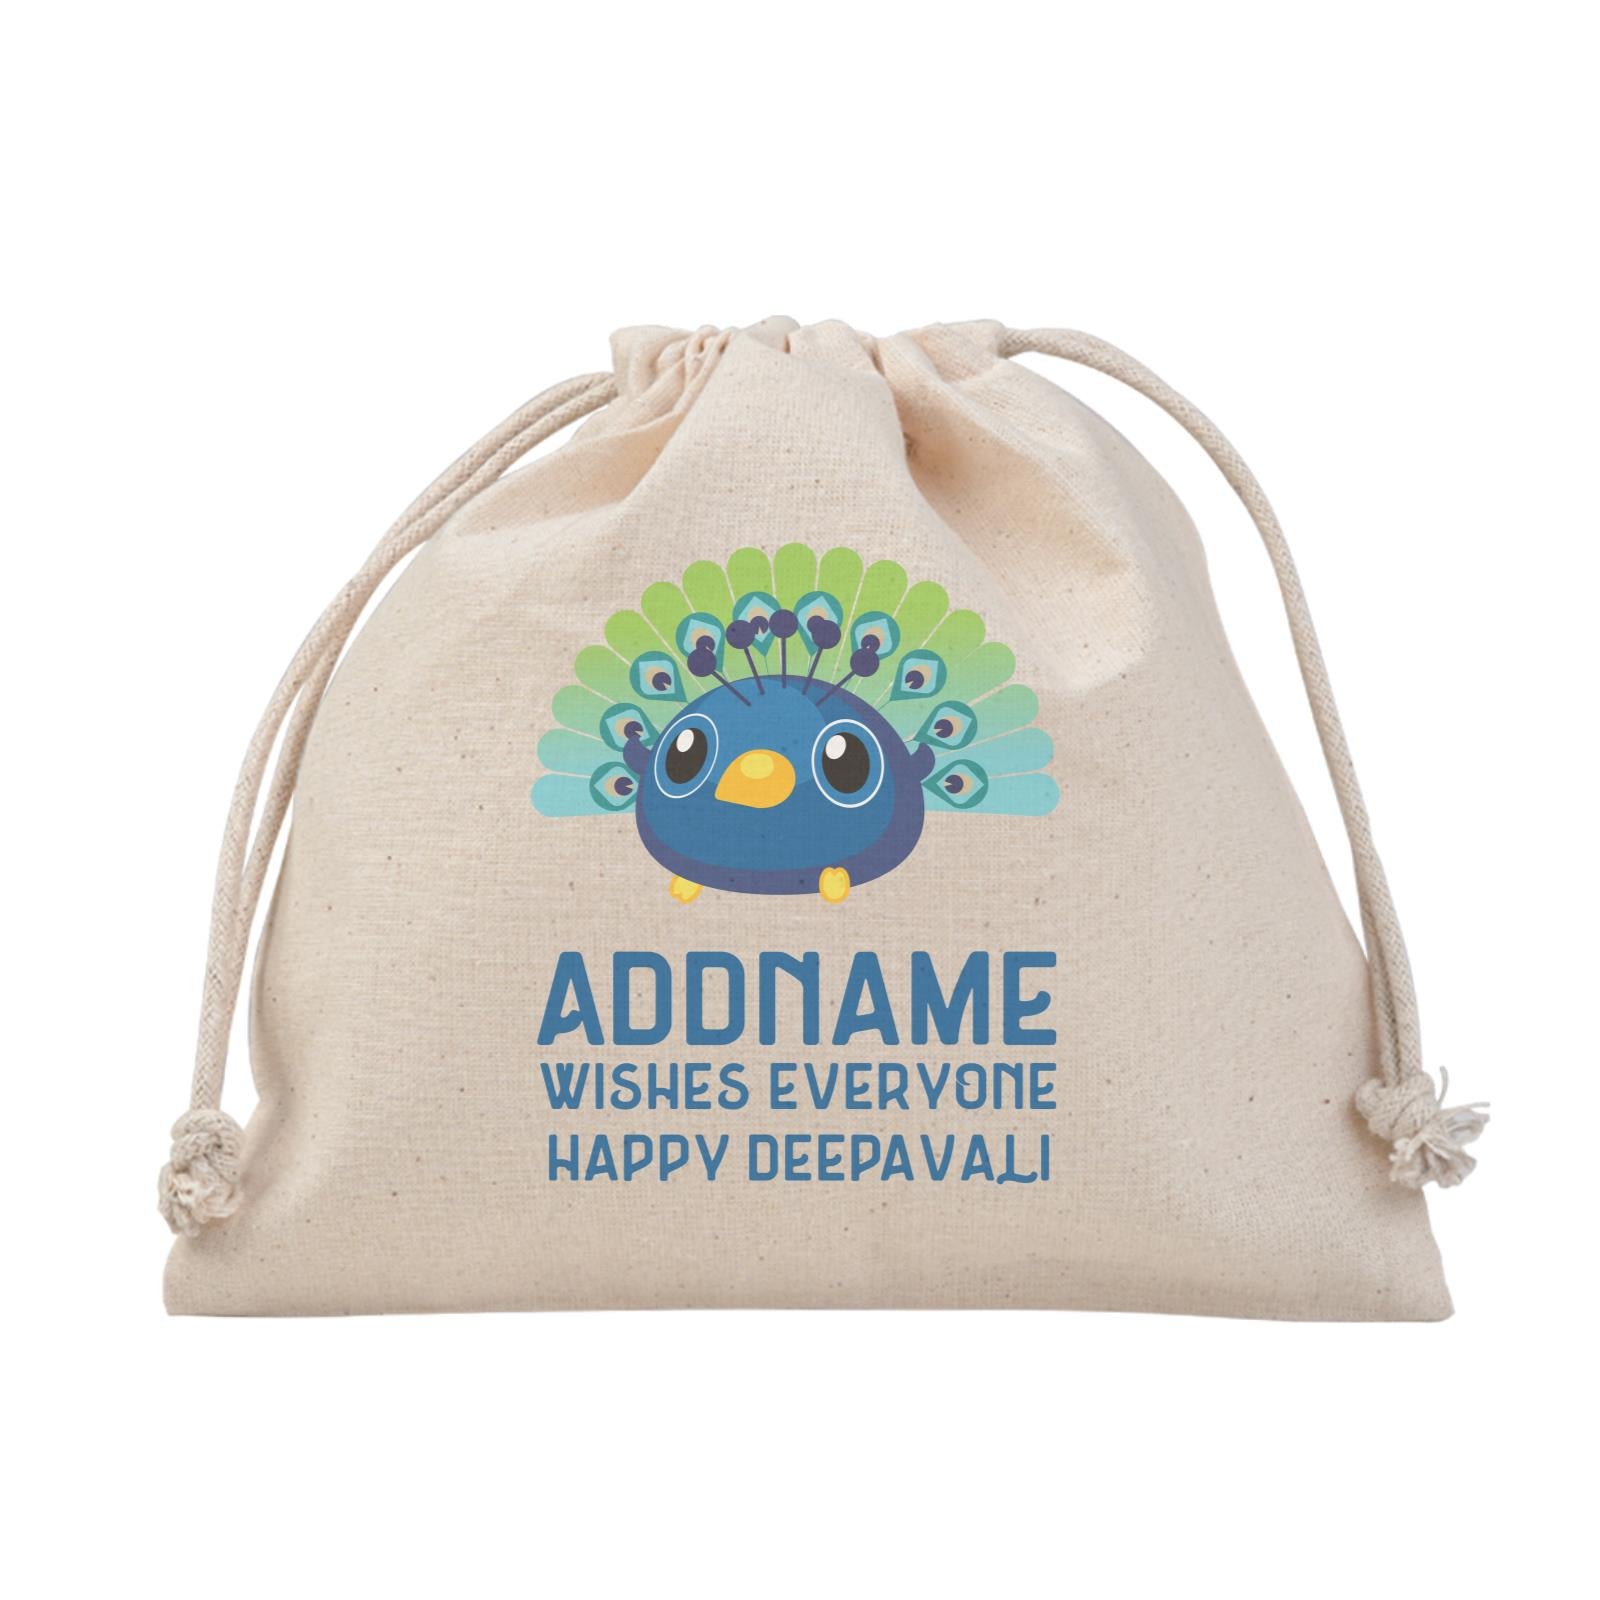 Deepavali Series Baby Peacock Wishes Everyone Happy Deepavali Satchel